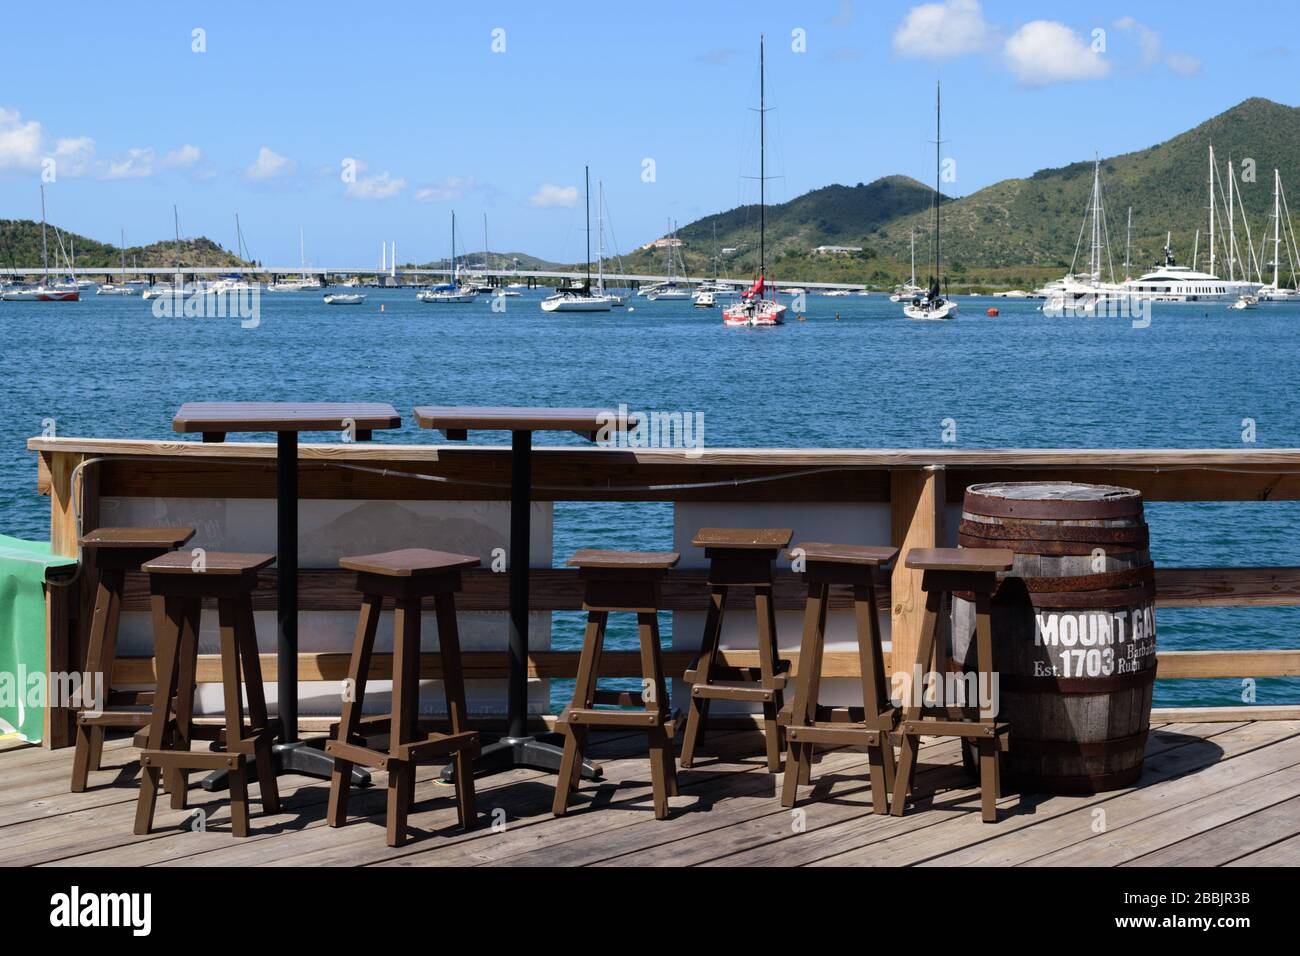 Impact de la pandémie dans les Caraïbes : normalement occupé, les tables du bar et restaurant SMYC sont vides, mais fermées fin mars, avril et mai 2020 Banque D'Images